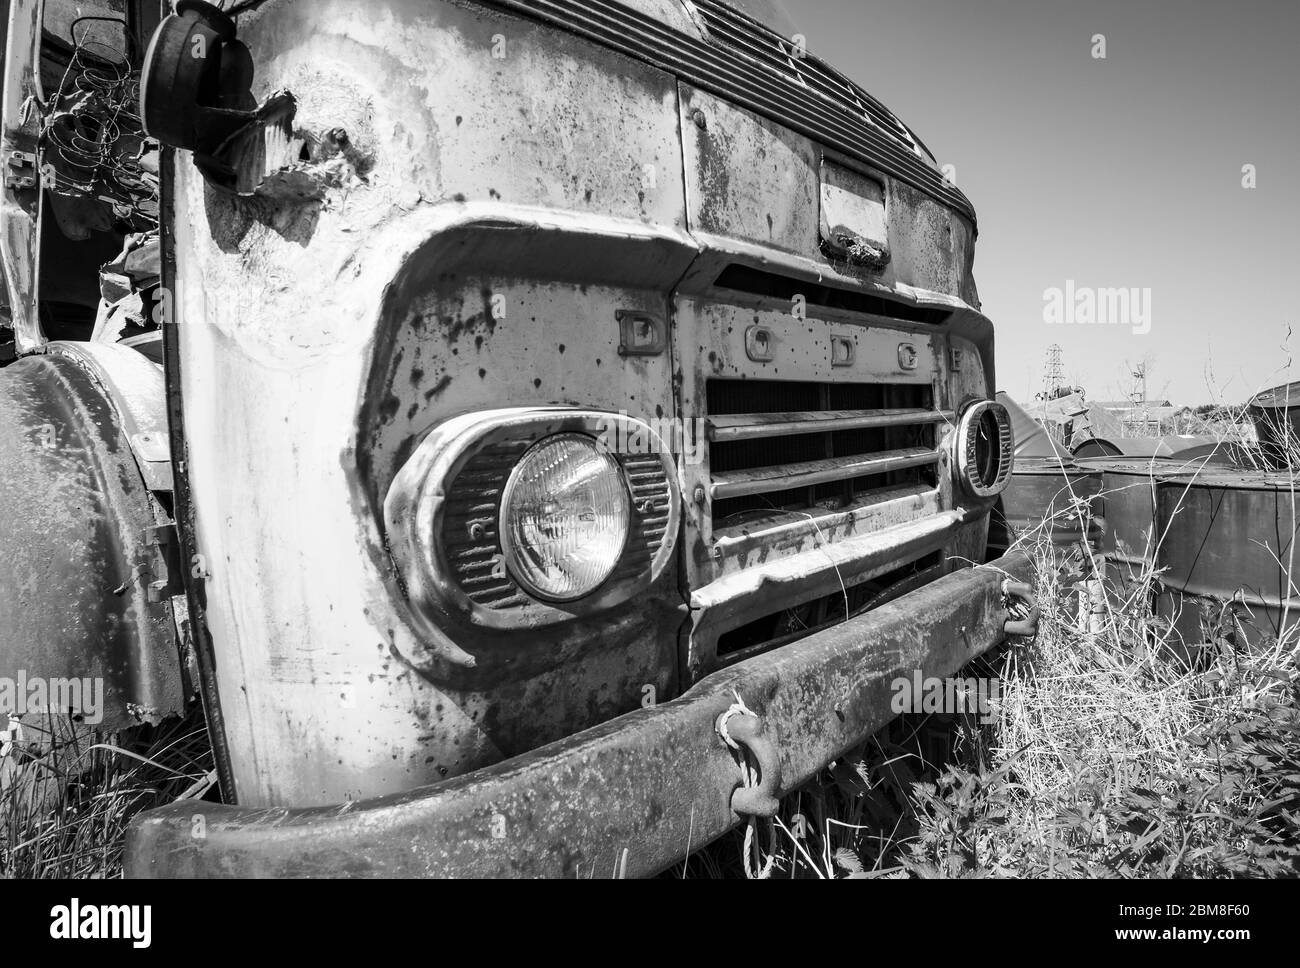 Viejo Dodge viejo oxidado abandonado camión Foto de stock